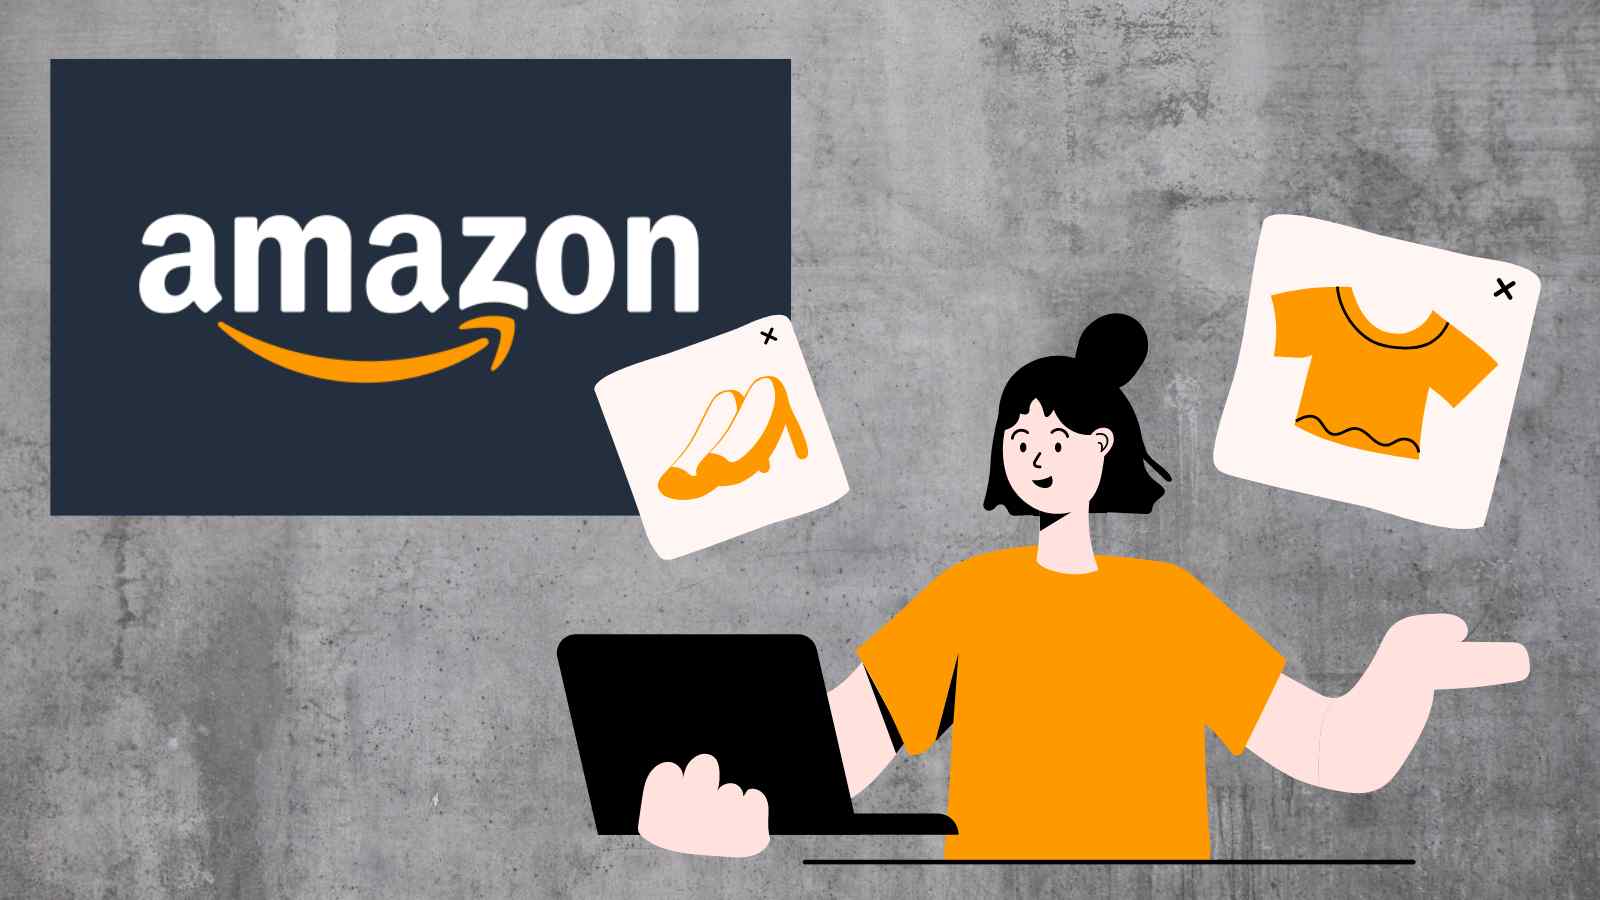 Amazon sembrerebbe essere in procinto di aprire un suo shop di e-commerce online low cost, per competere con le aziende già esistenti.